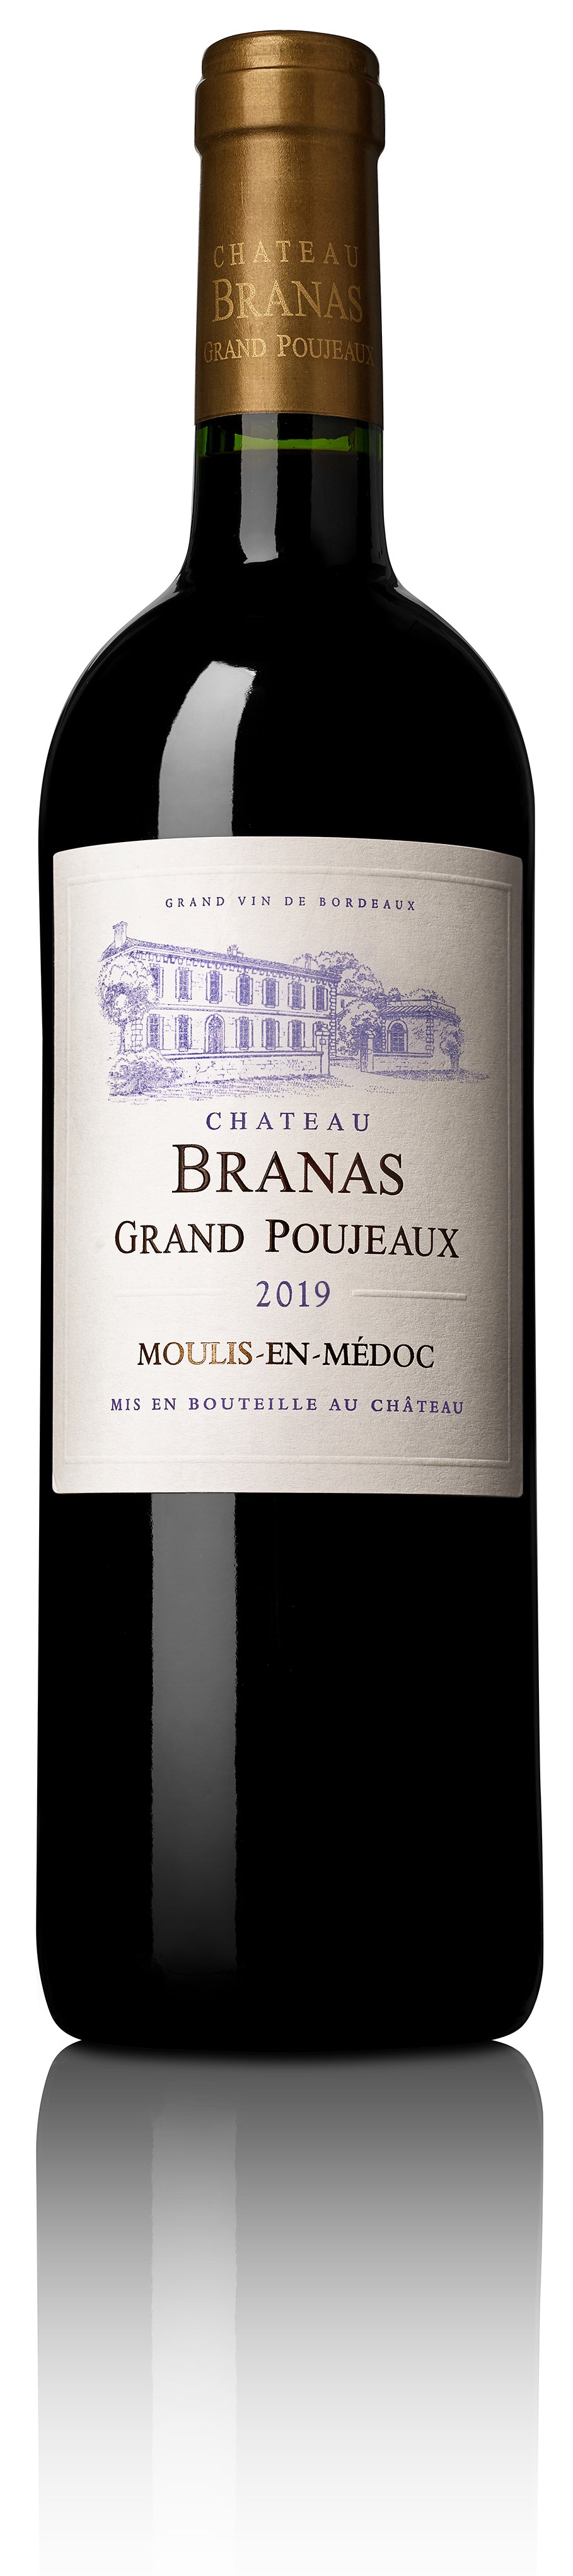 Château Branas Grand Poujeaux 2019 AOC MOULIS